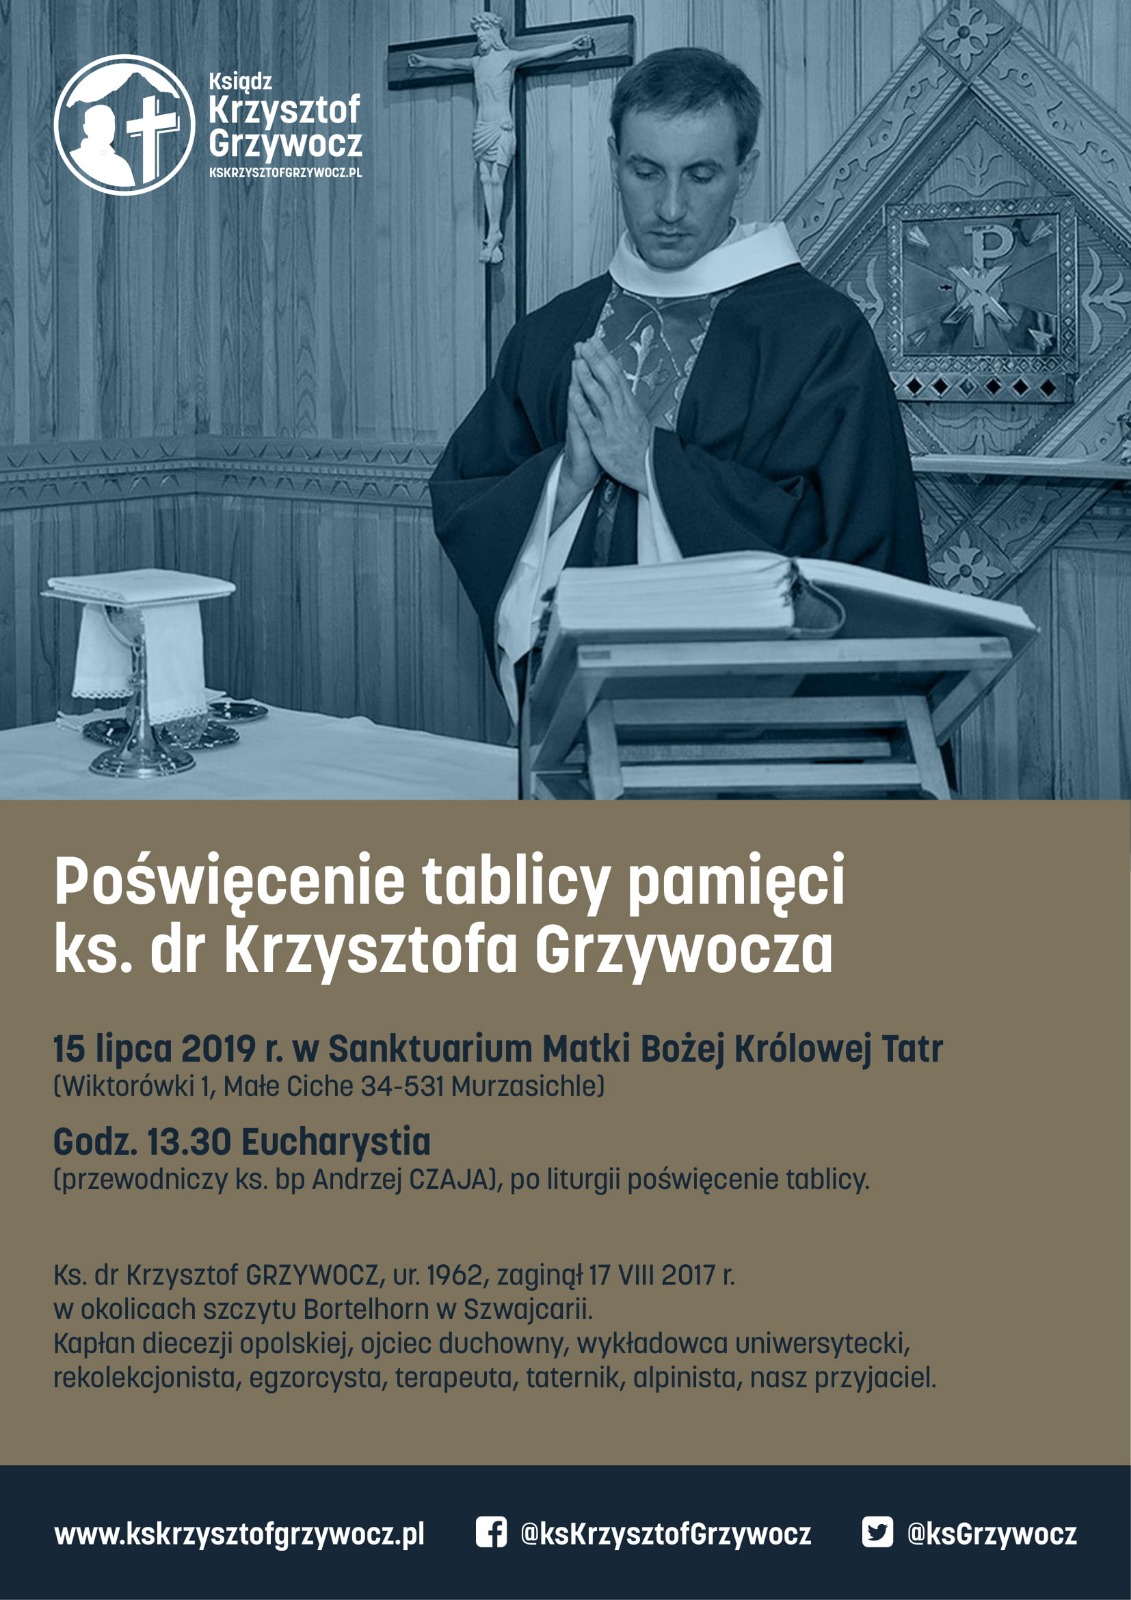 Poświęcenie tablicy pamięci ks. Krzysztofa Grzywocza